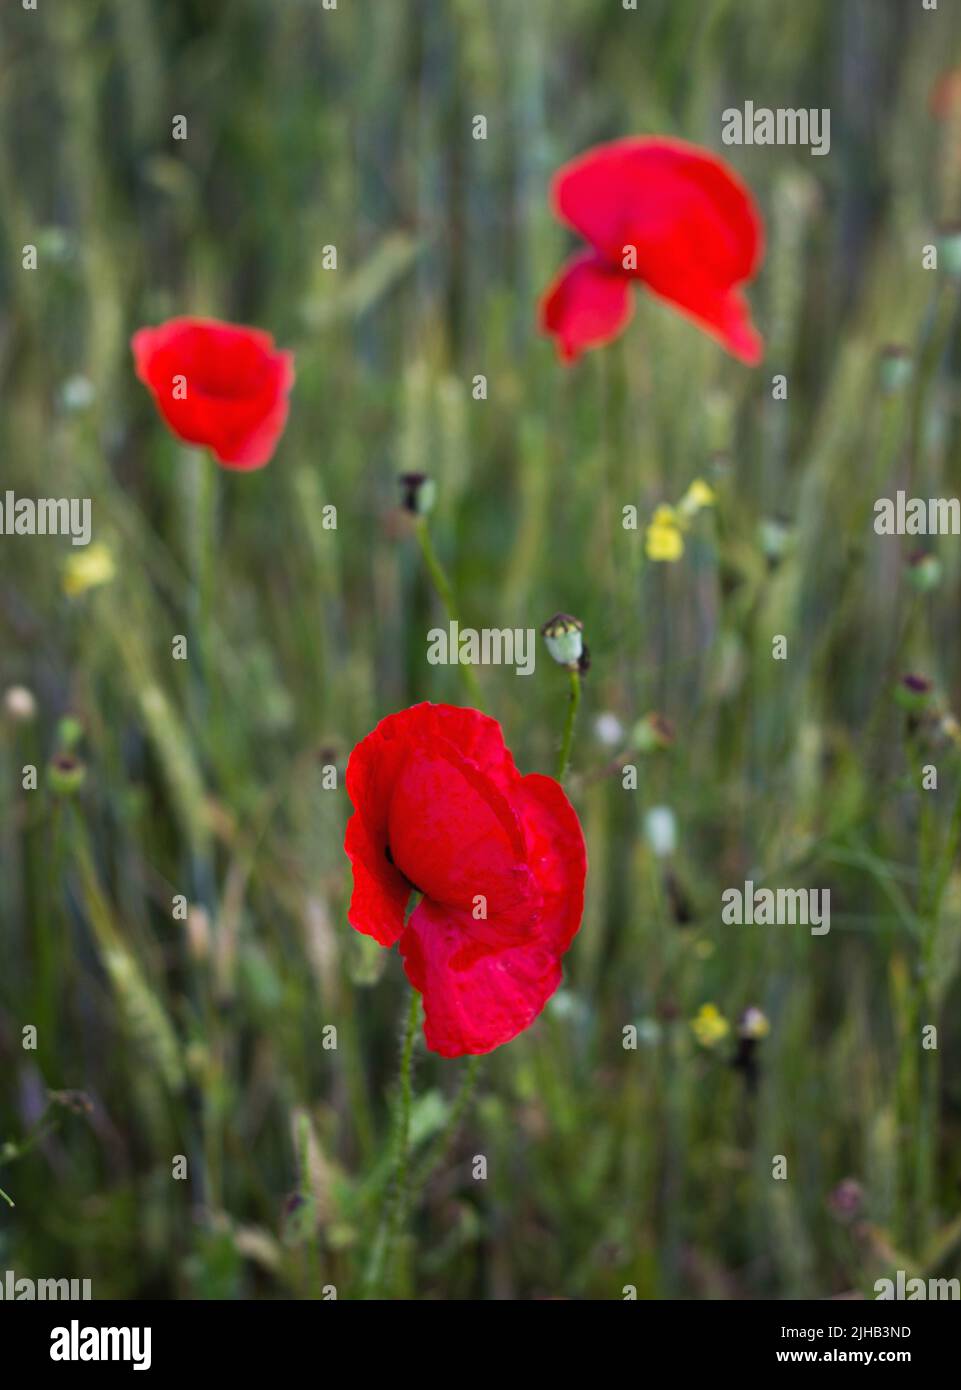 Beautiful flower of poppy in a poppy field Stock Photo